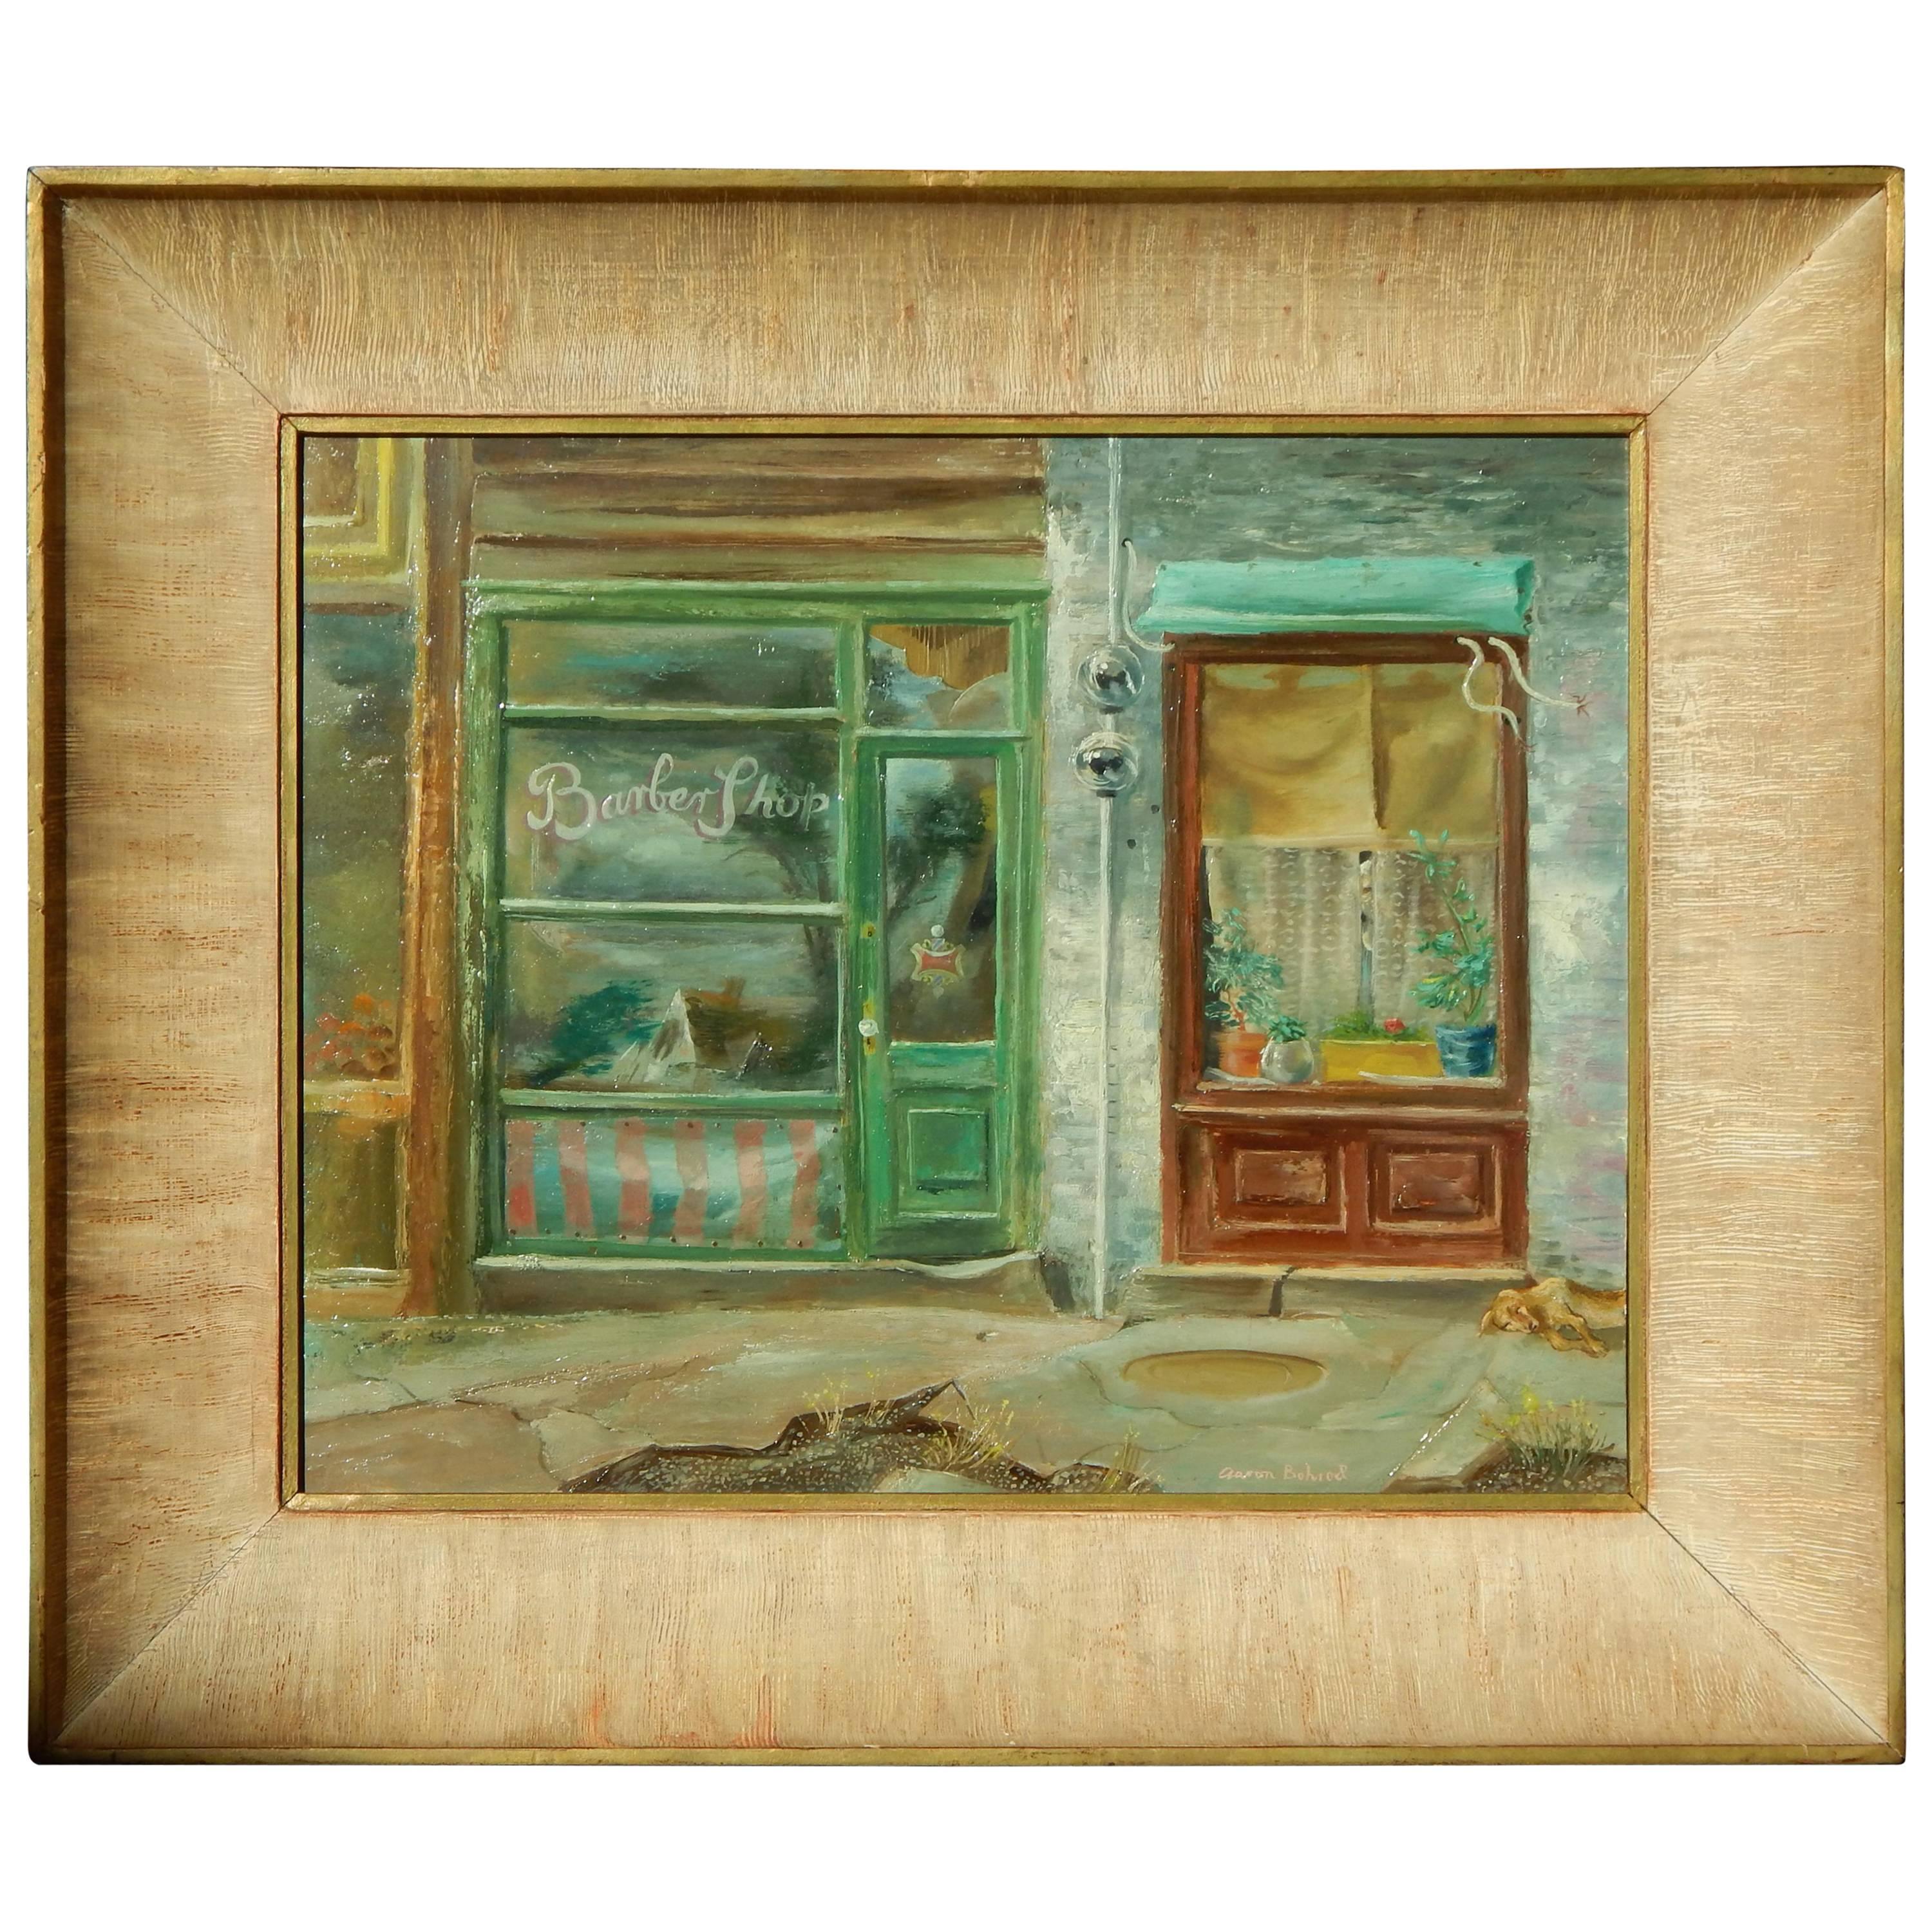 Chicago/Wisconsin, Künstler Aaron Bohrod, Ölgemälde, ca. 1940er Jahre, Shop Windows